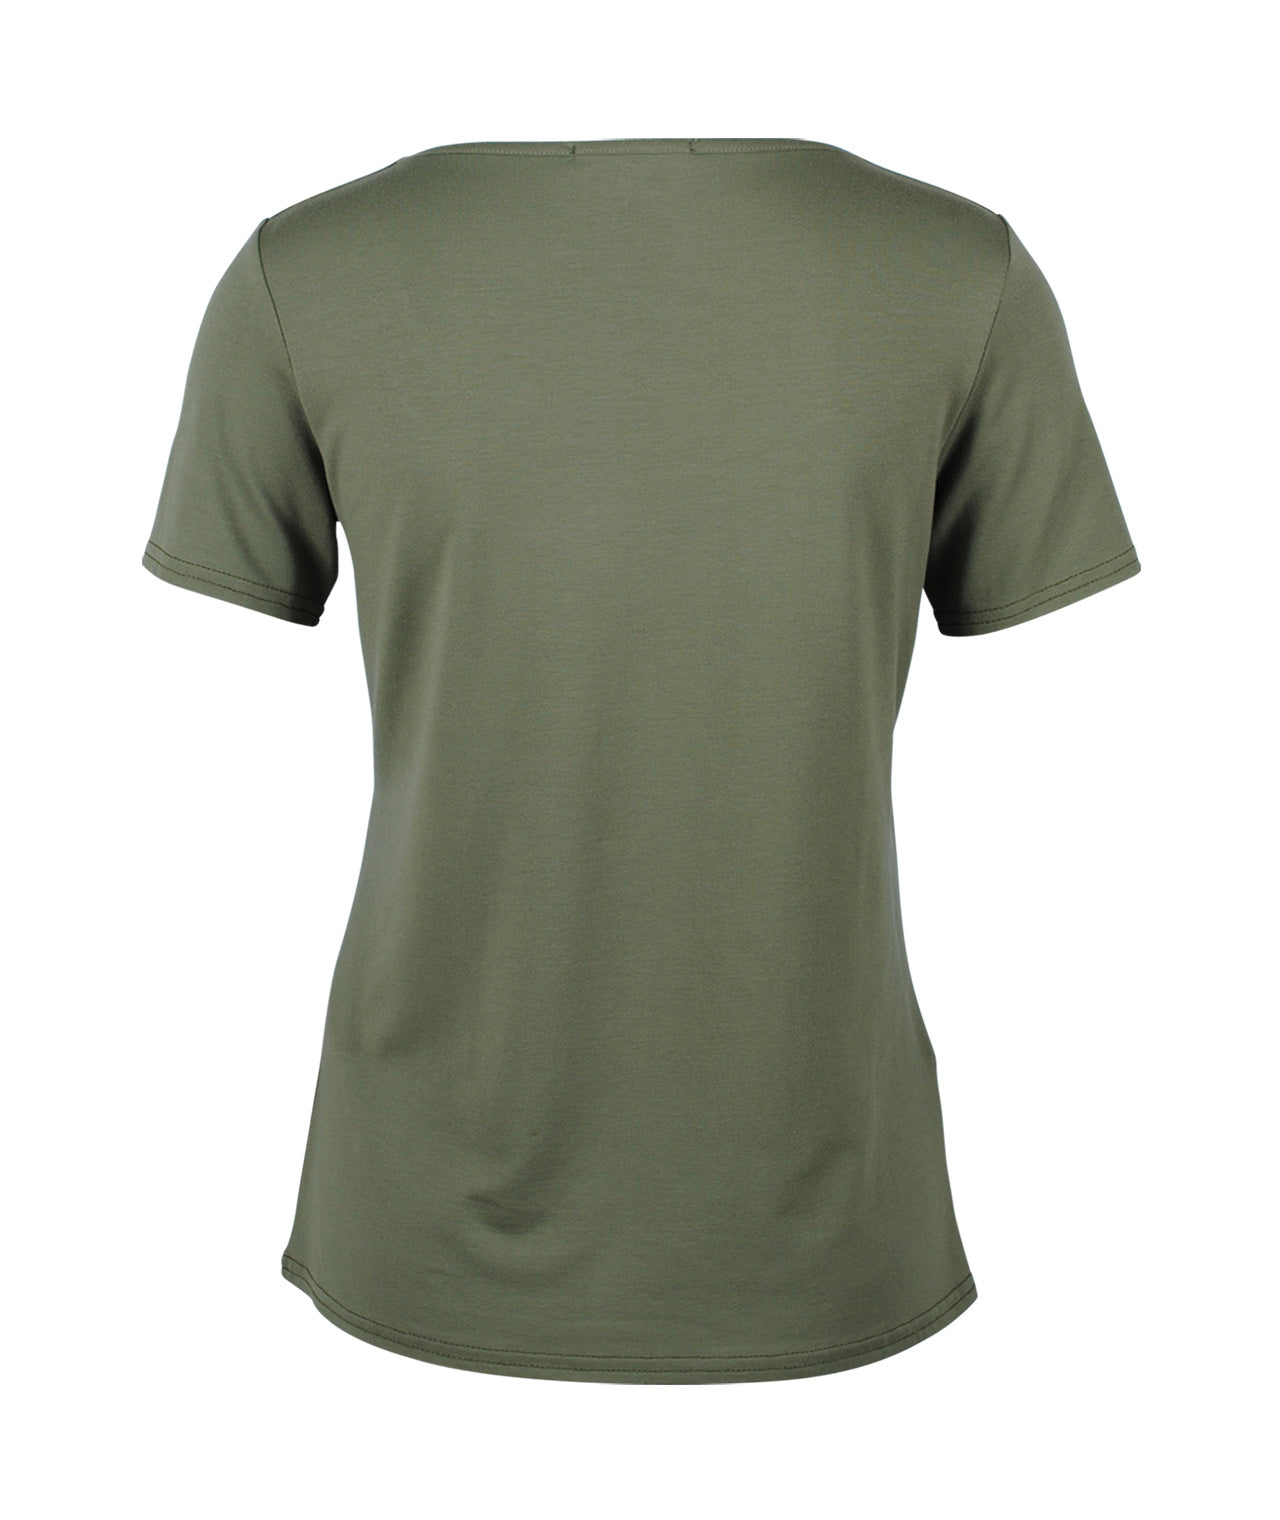 1/2 RH-Shirt Birkin | khaki